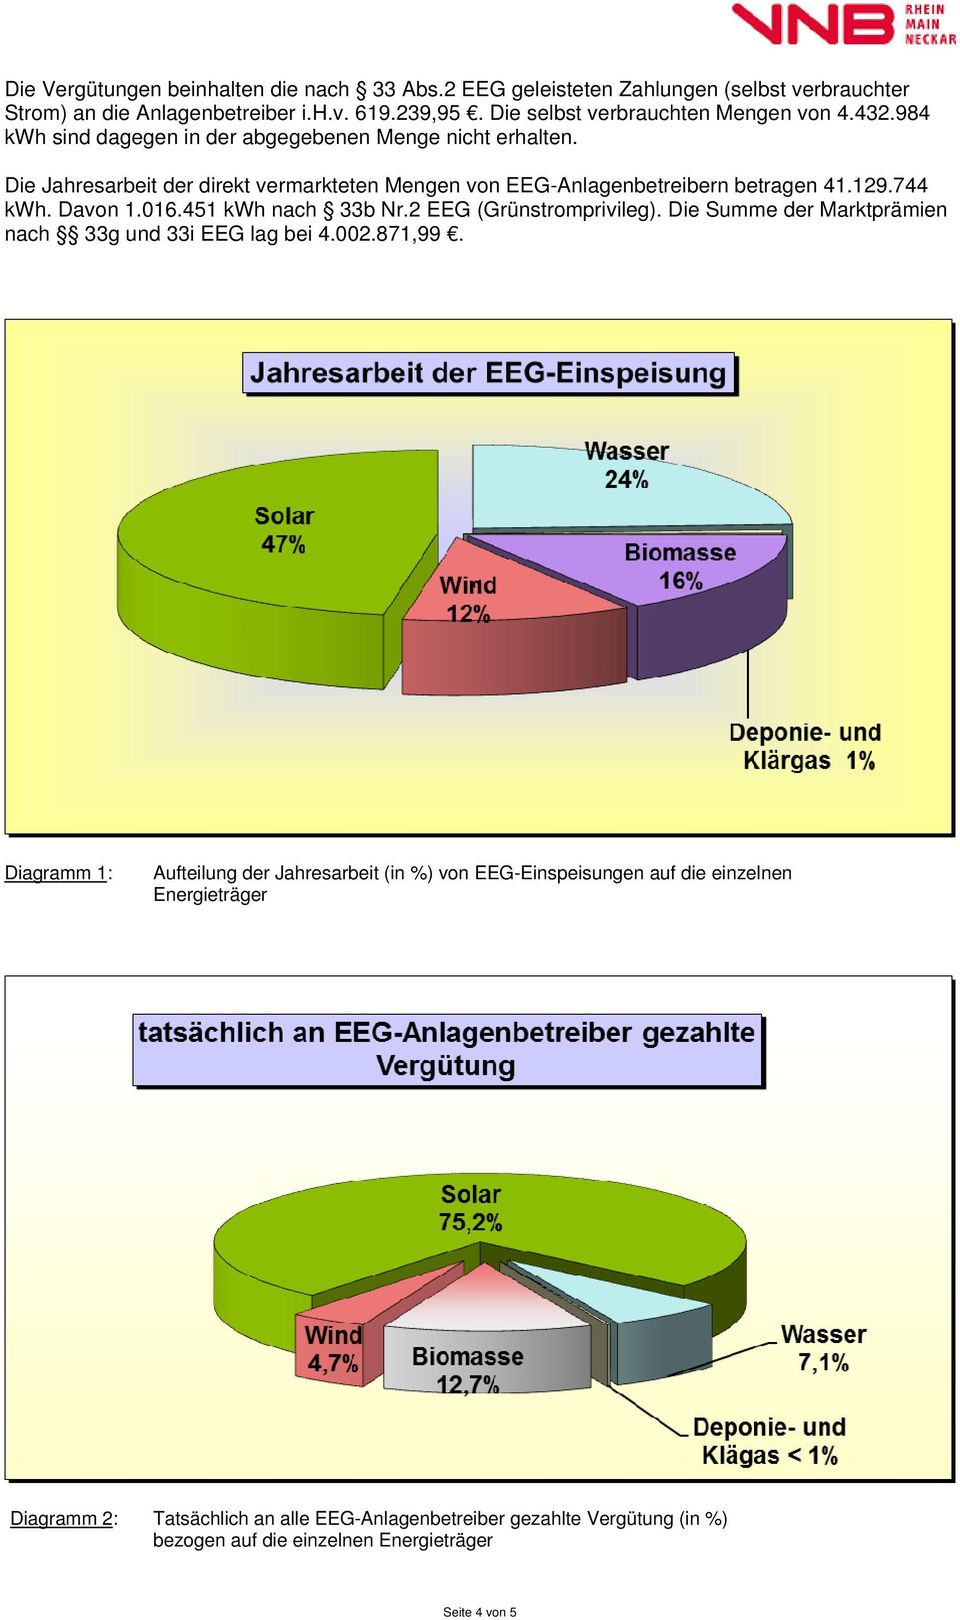 Die Jahresarbeit der direkt vermarkteten Mengen von EEG-Anlagenbetreibern betragen 41.129.744 kwh. Davon 1.016.451 kwh nach 33b Nr.2 EEG (Grünstromprivileg).